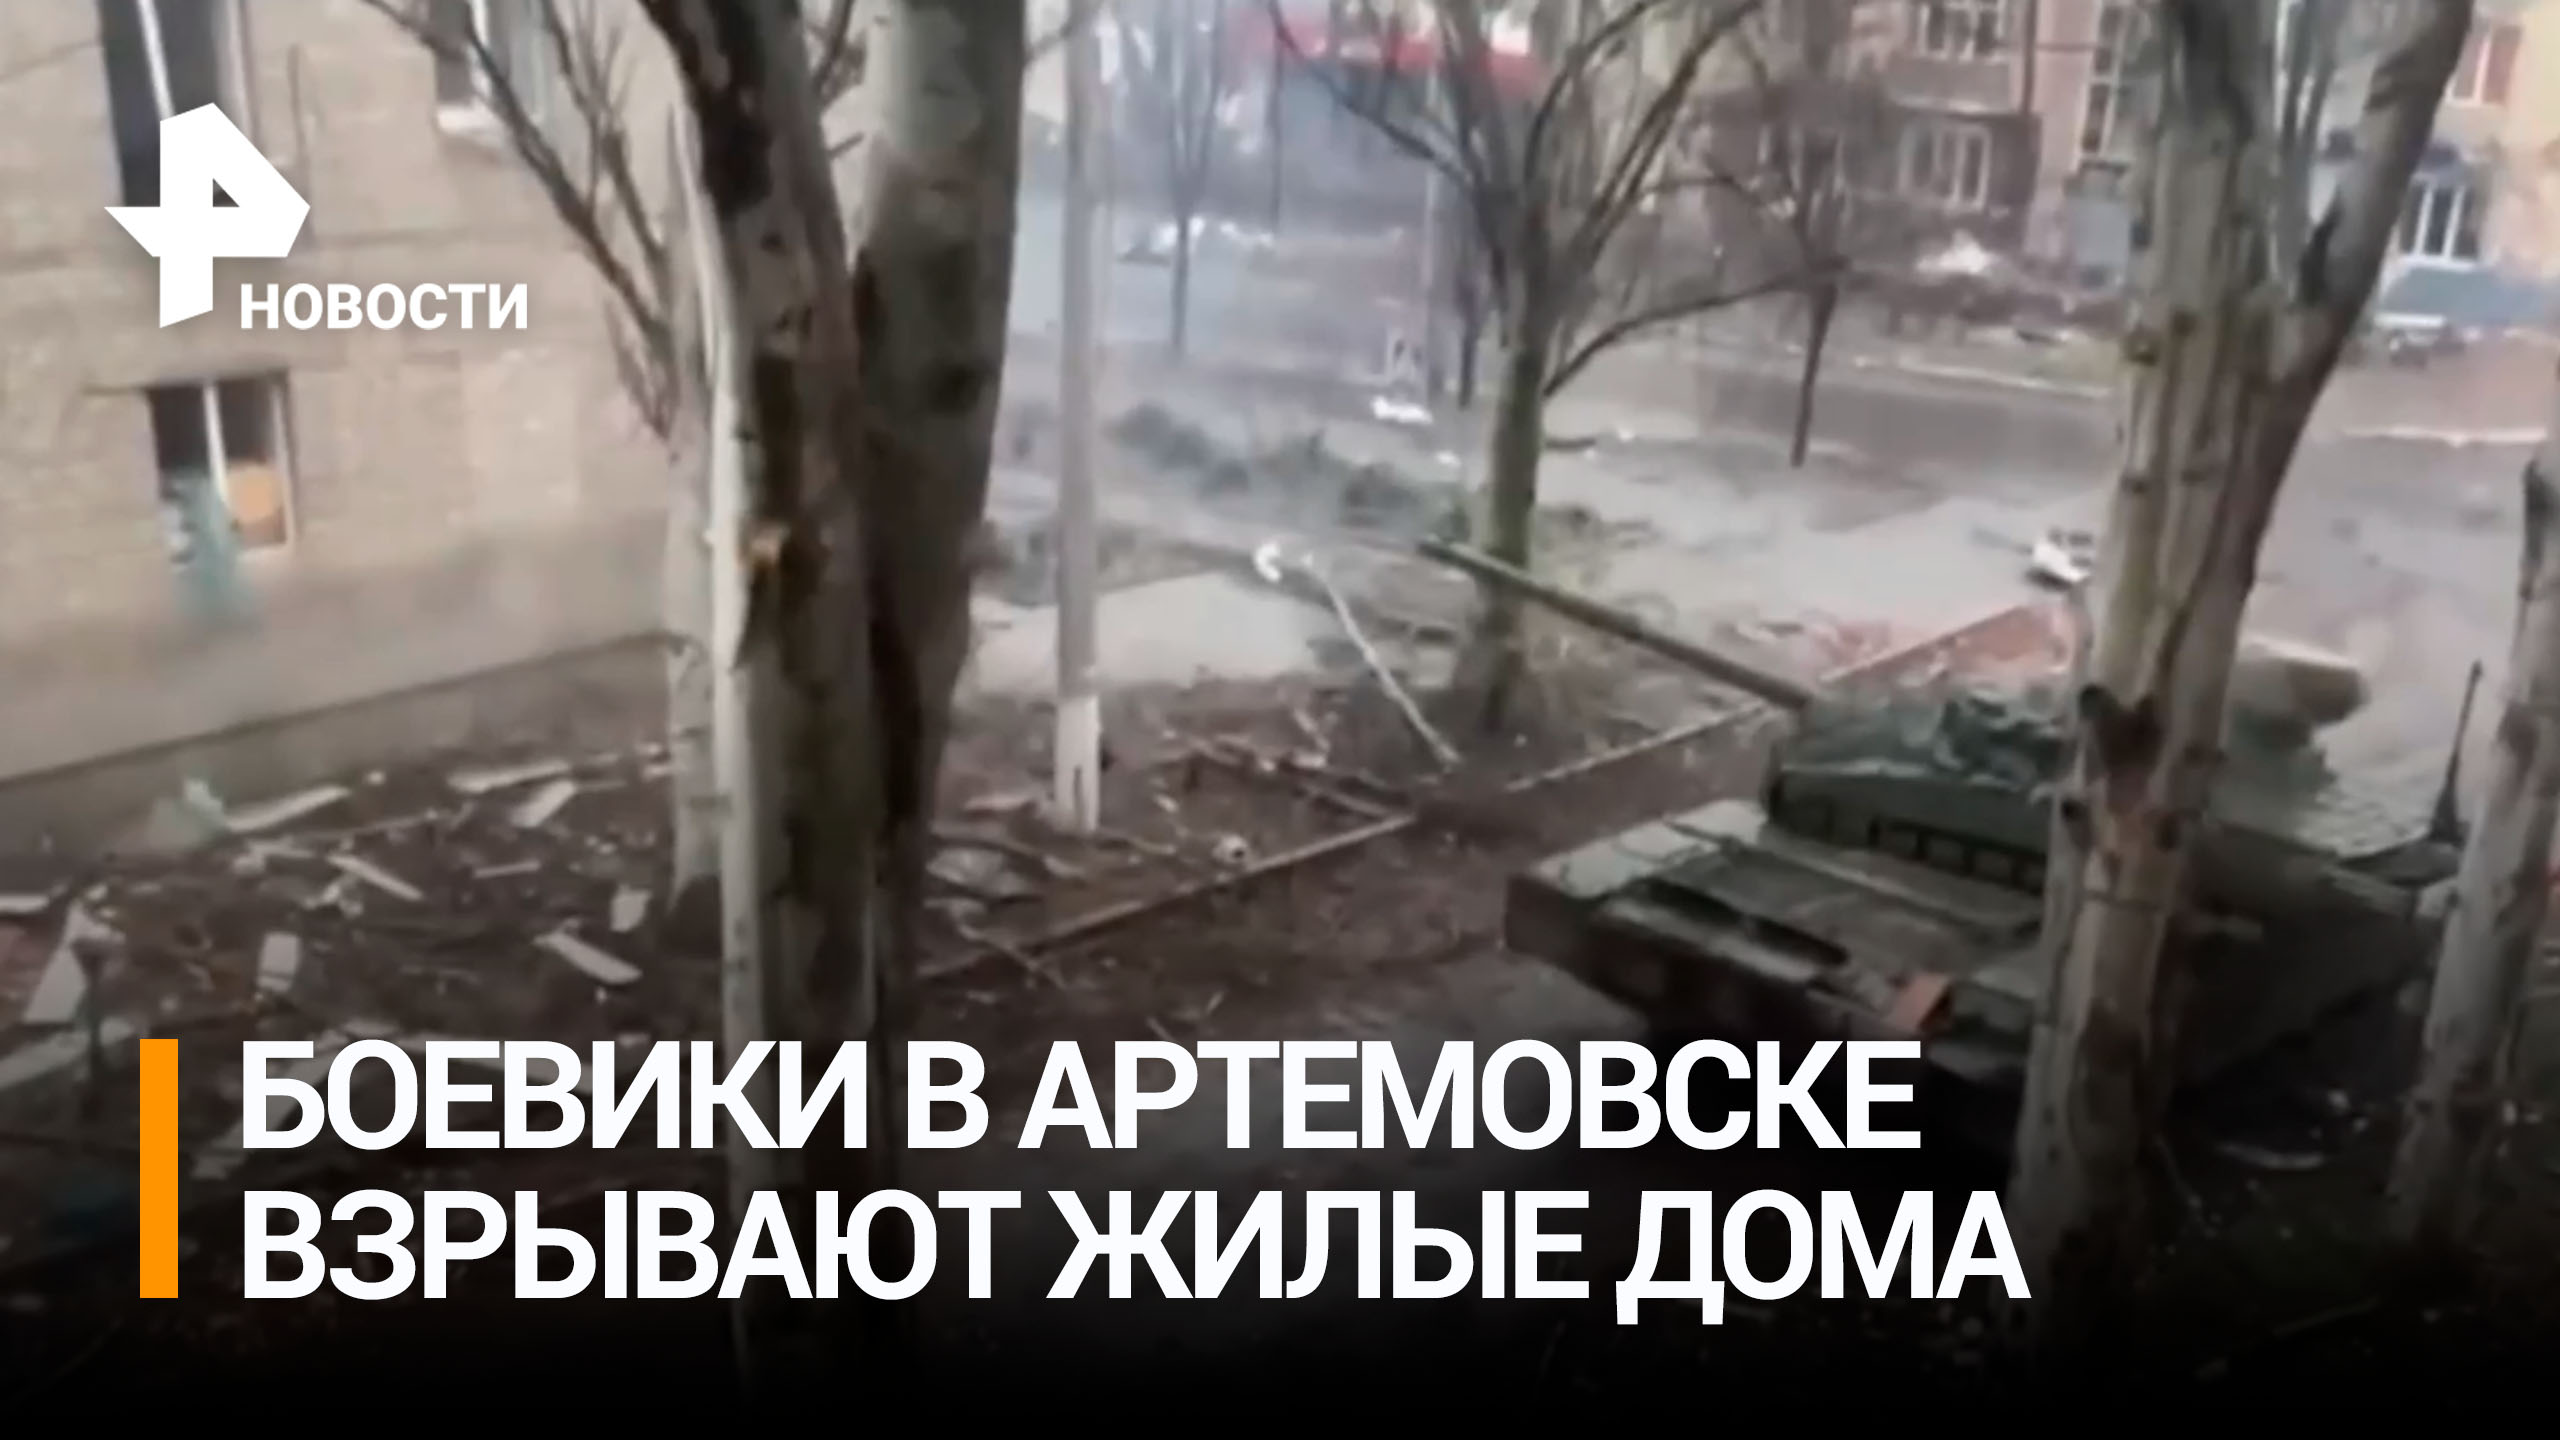 ВСУ во время отступления взрывают жилые дома в Артемовске / РЕН Новости